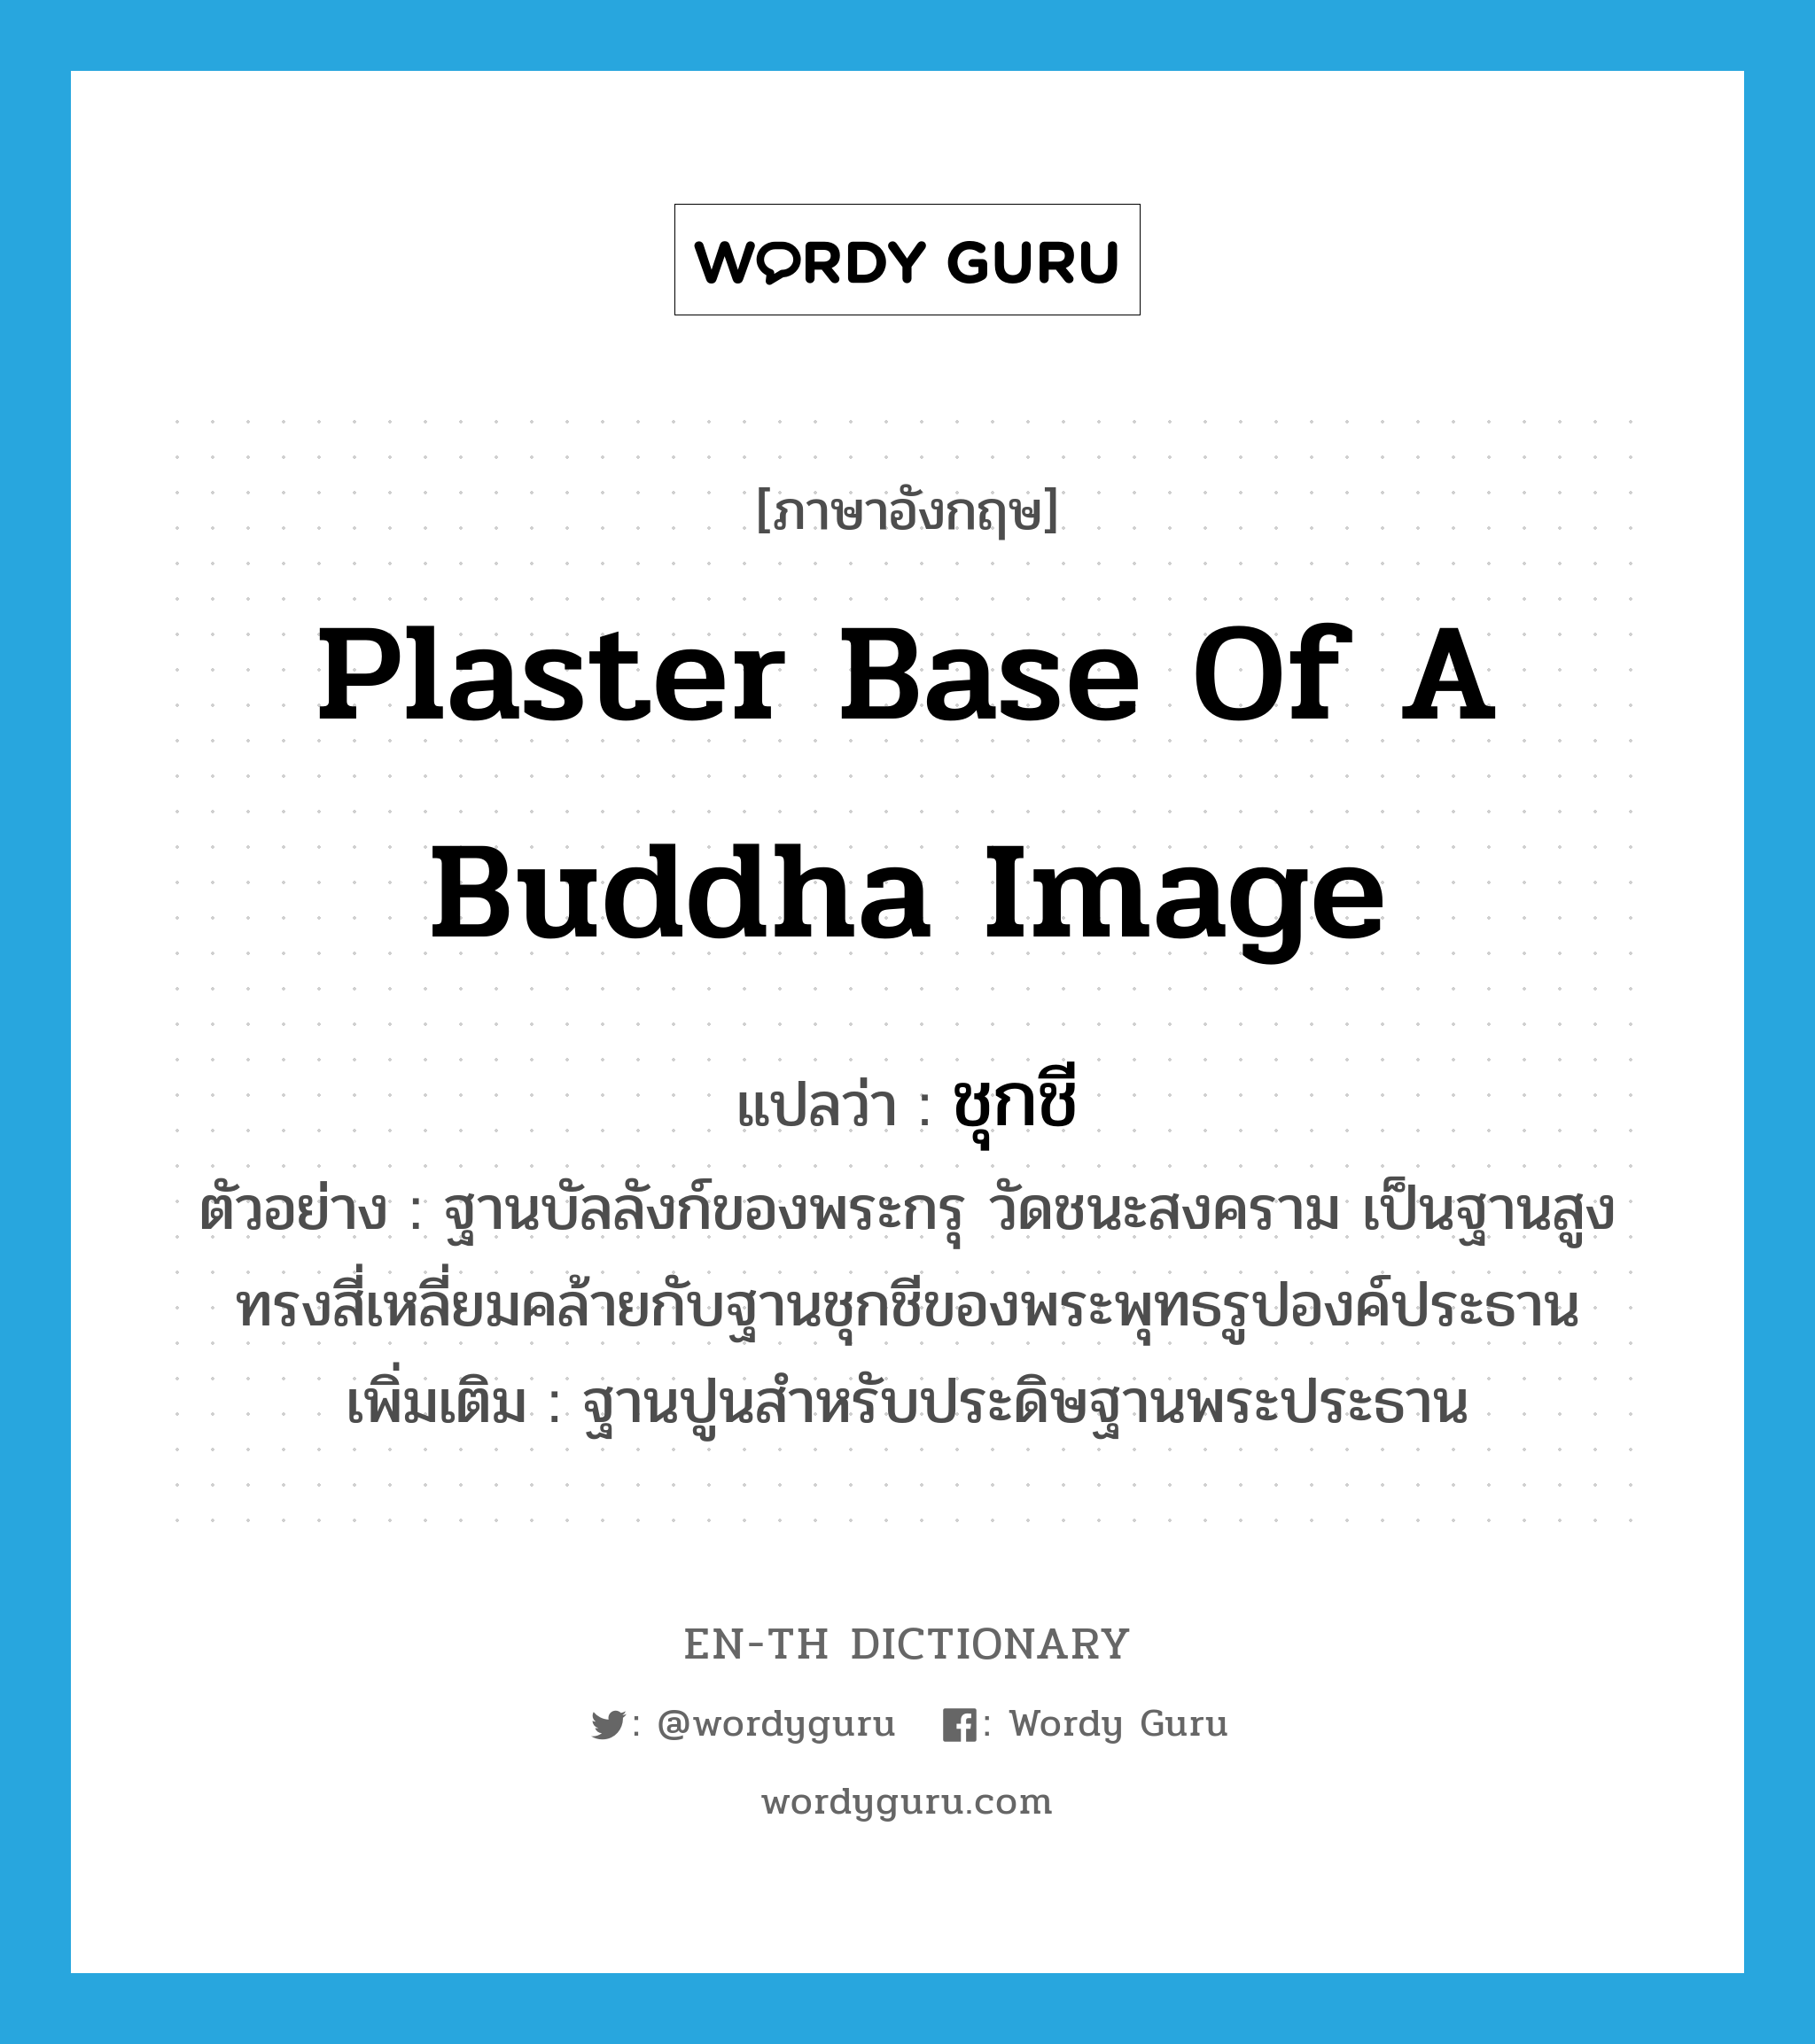 plaster base of a Buddha image แปลว่า?, คำศัพท์ภาษาอังกฤษ plaster base of a Buddha image แปลว่า ชุกชี ประเภท N ตัวอย่าง ฐานบัลลังก์ของพระกรุ วัดชนะสงคราม เป็นฐานสูงทรงสี่เหลี่ยมคล้ายกับฐานชุกชีของพระพุทธรูปองค์ประธาน เพิ่มเติม ฐานปูนสำหรับประดิษฐานพระประธาน หมวด N